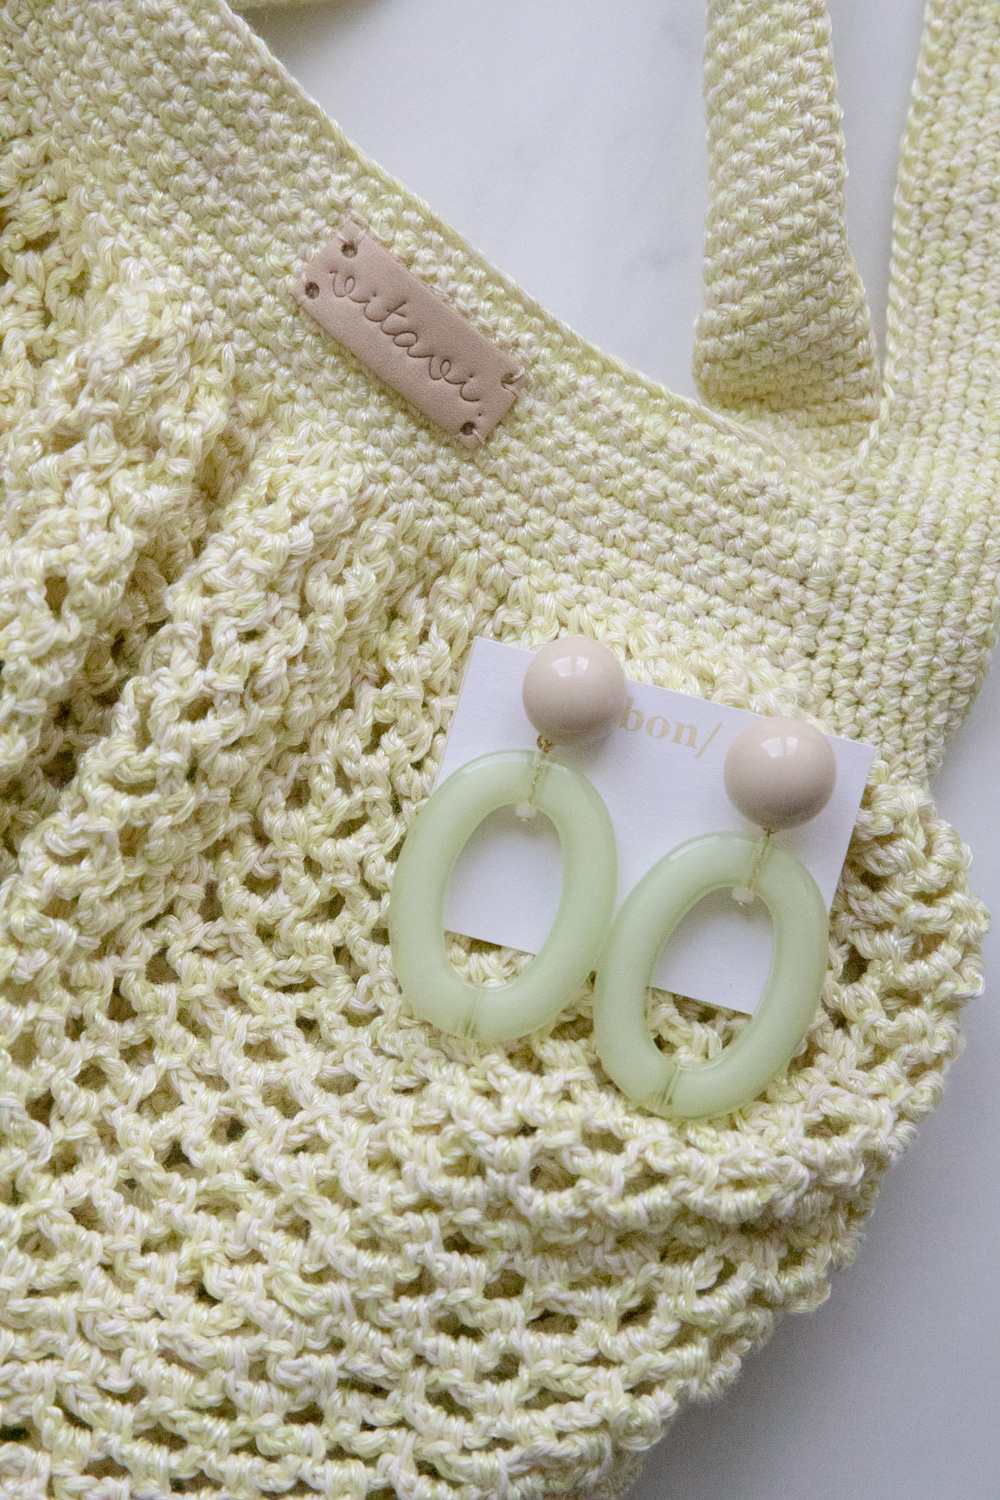 Crochet Net Bag - Lime